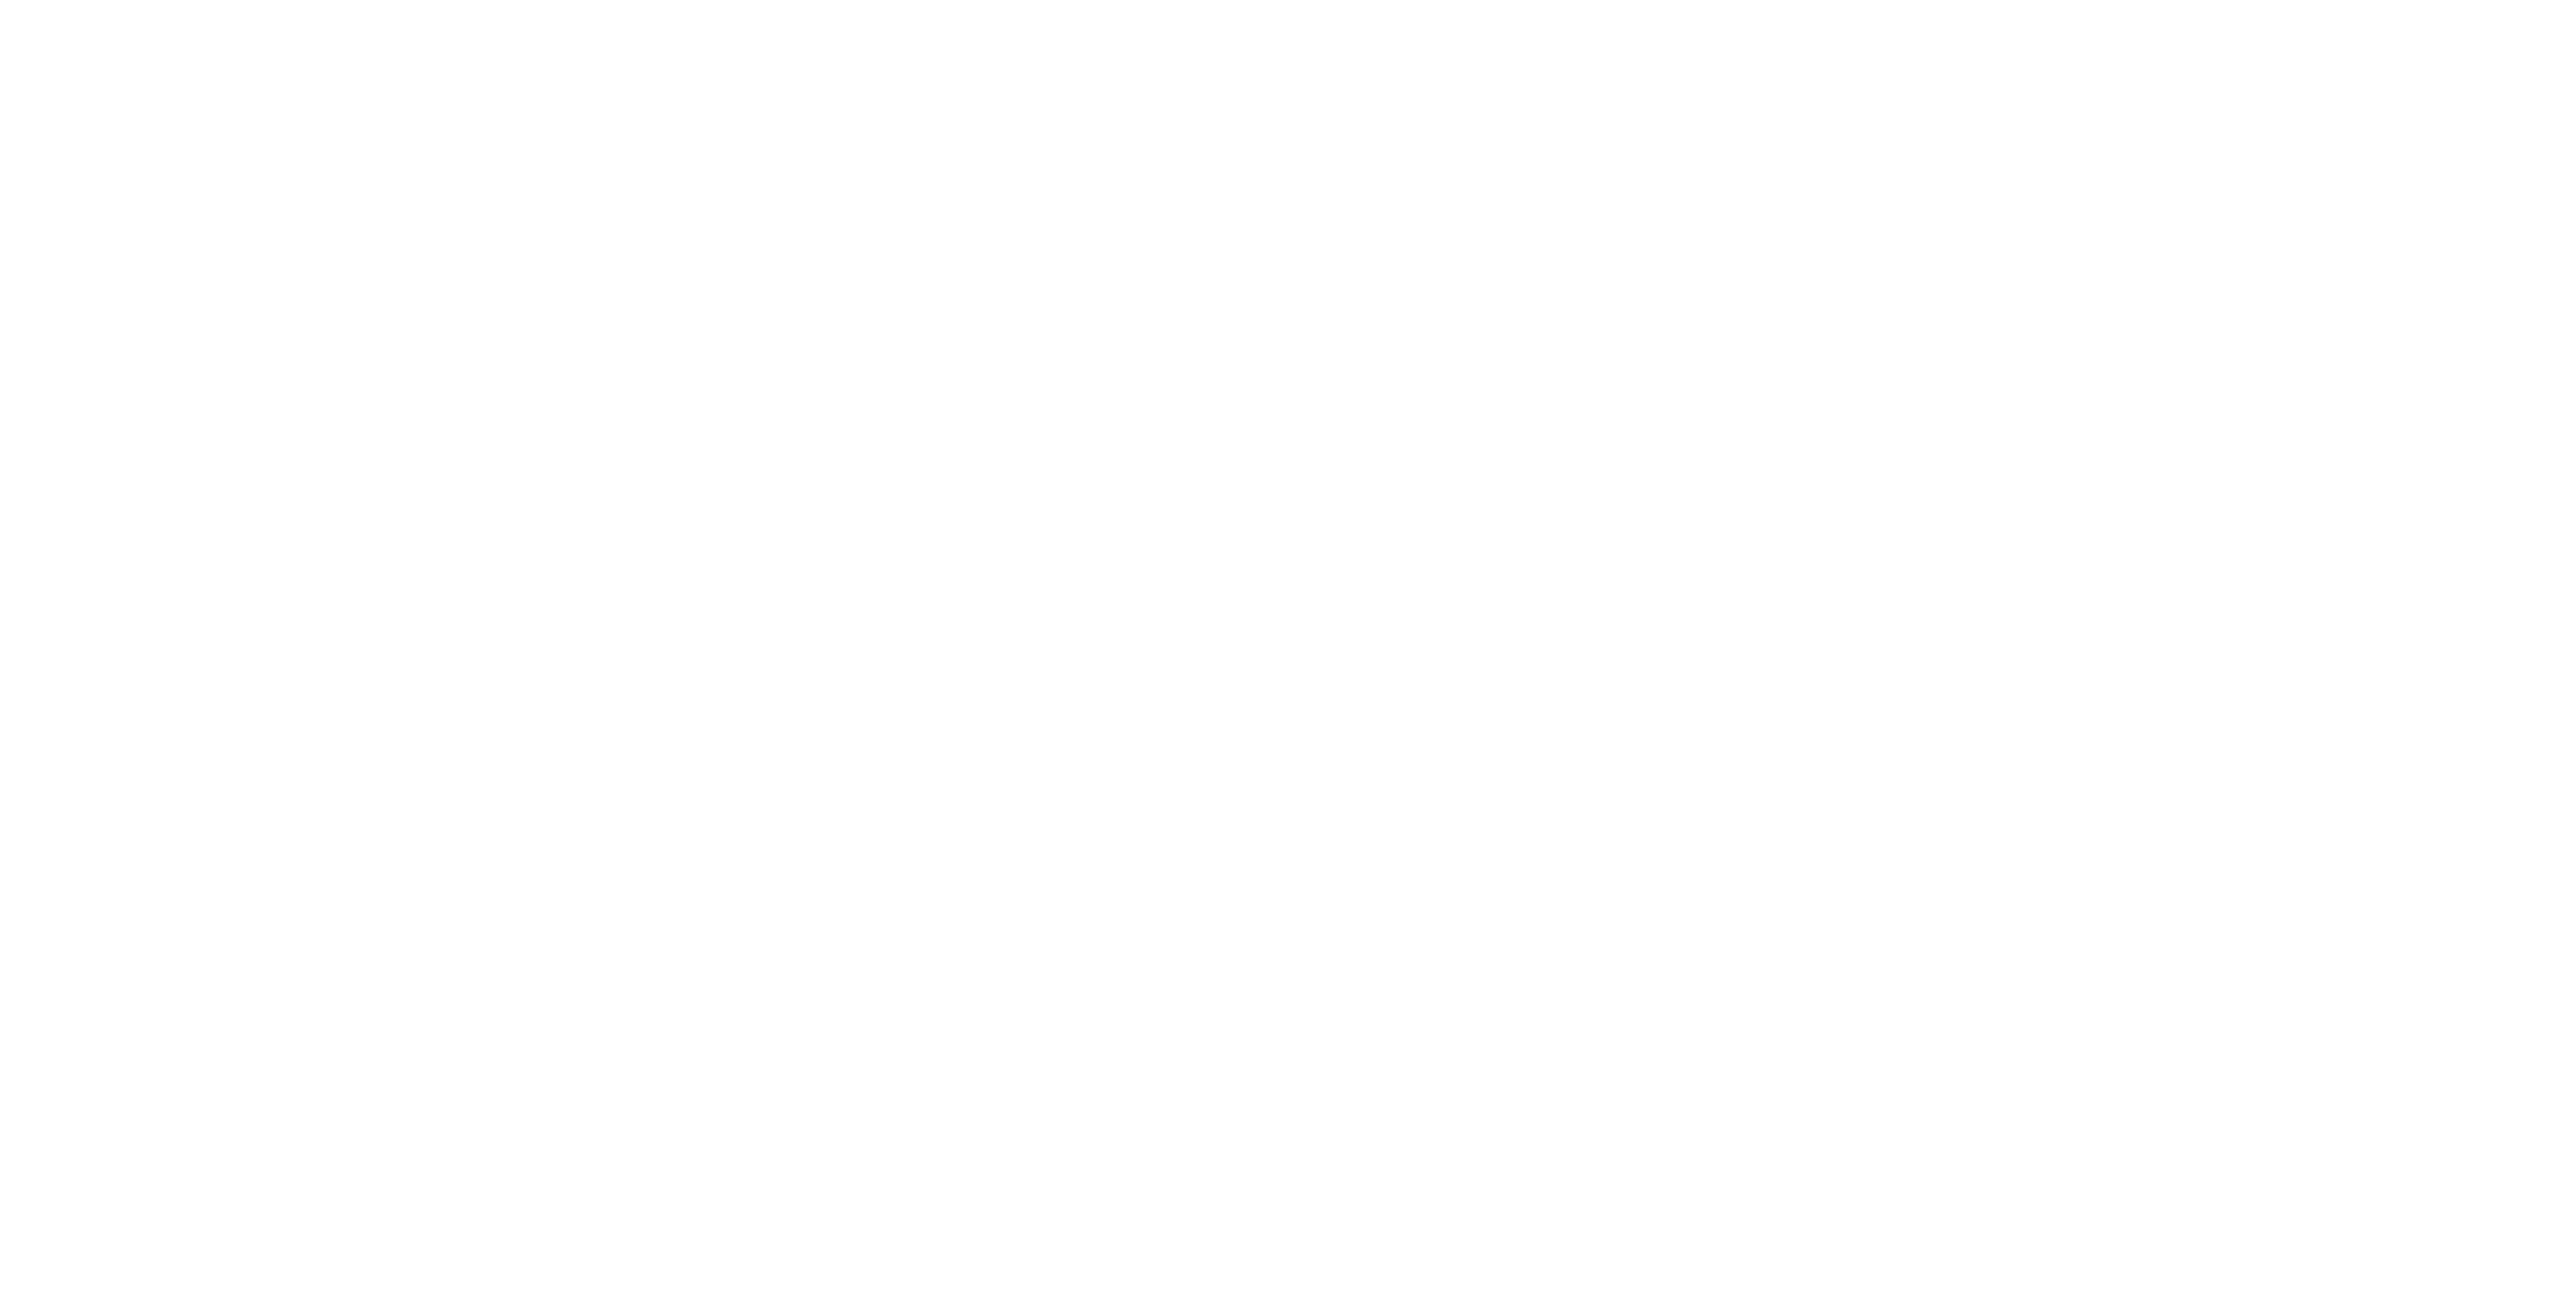 Logo der SC Consult GmBH